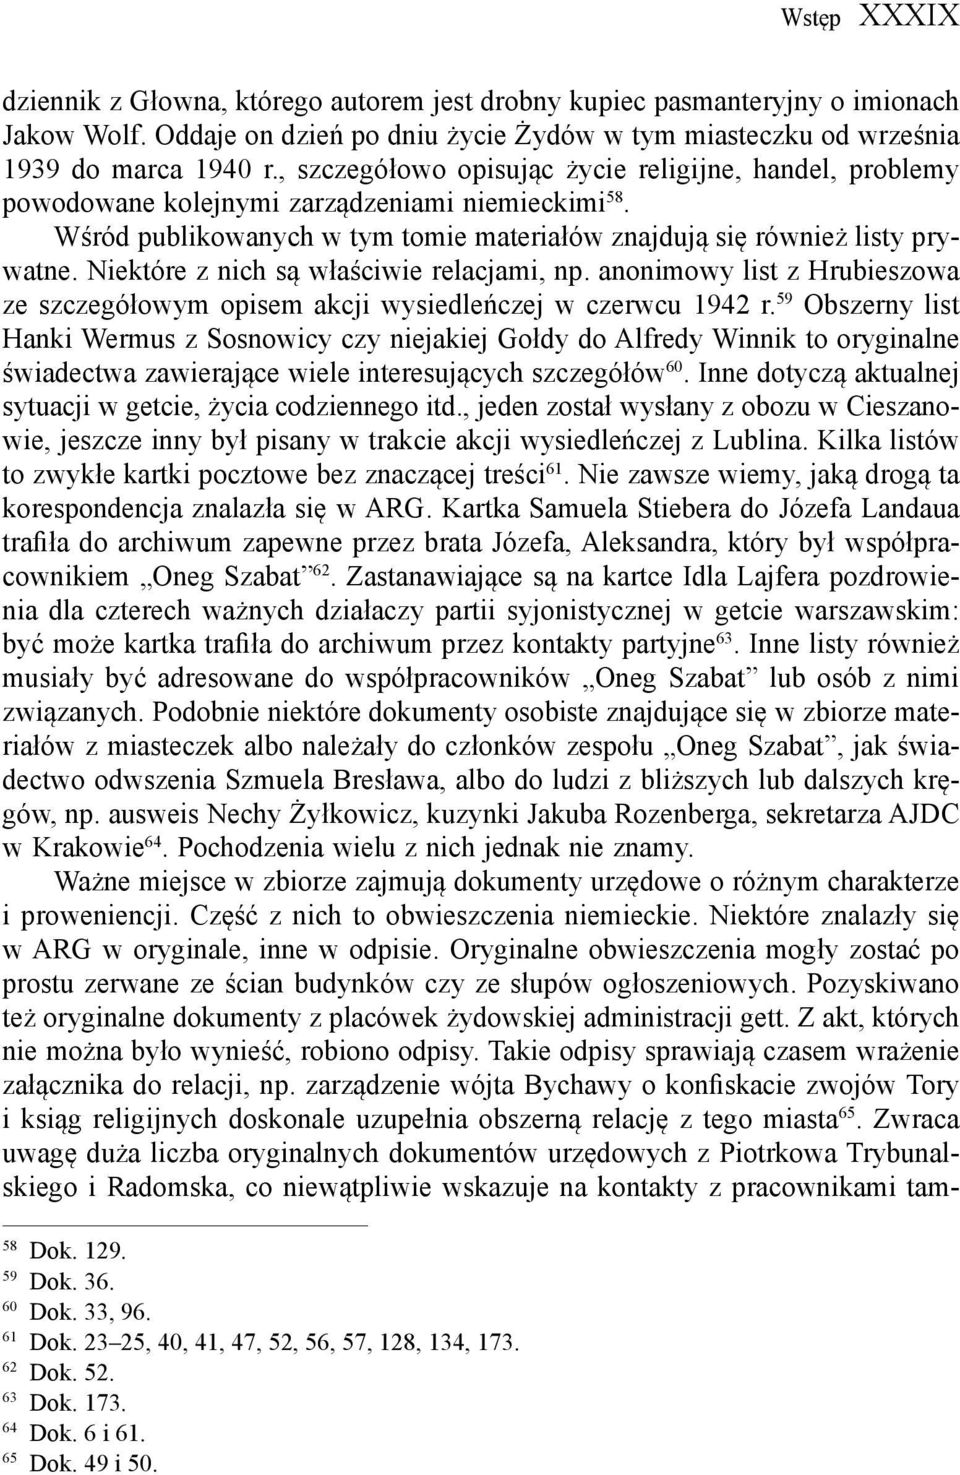 Niektóre z nich są właściwie relacjami, np. anonimowy list z Hrubieszowa ze szczegółowym opisem akcji wysiedleńczej w czerwcu 1942 r.